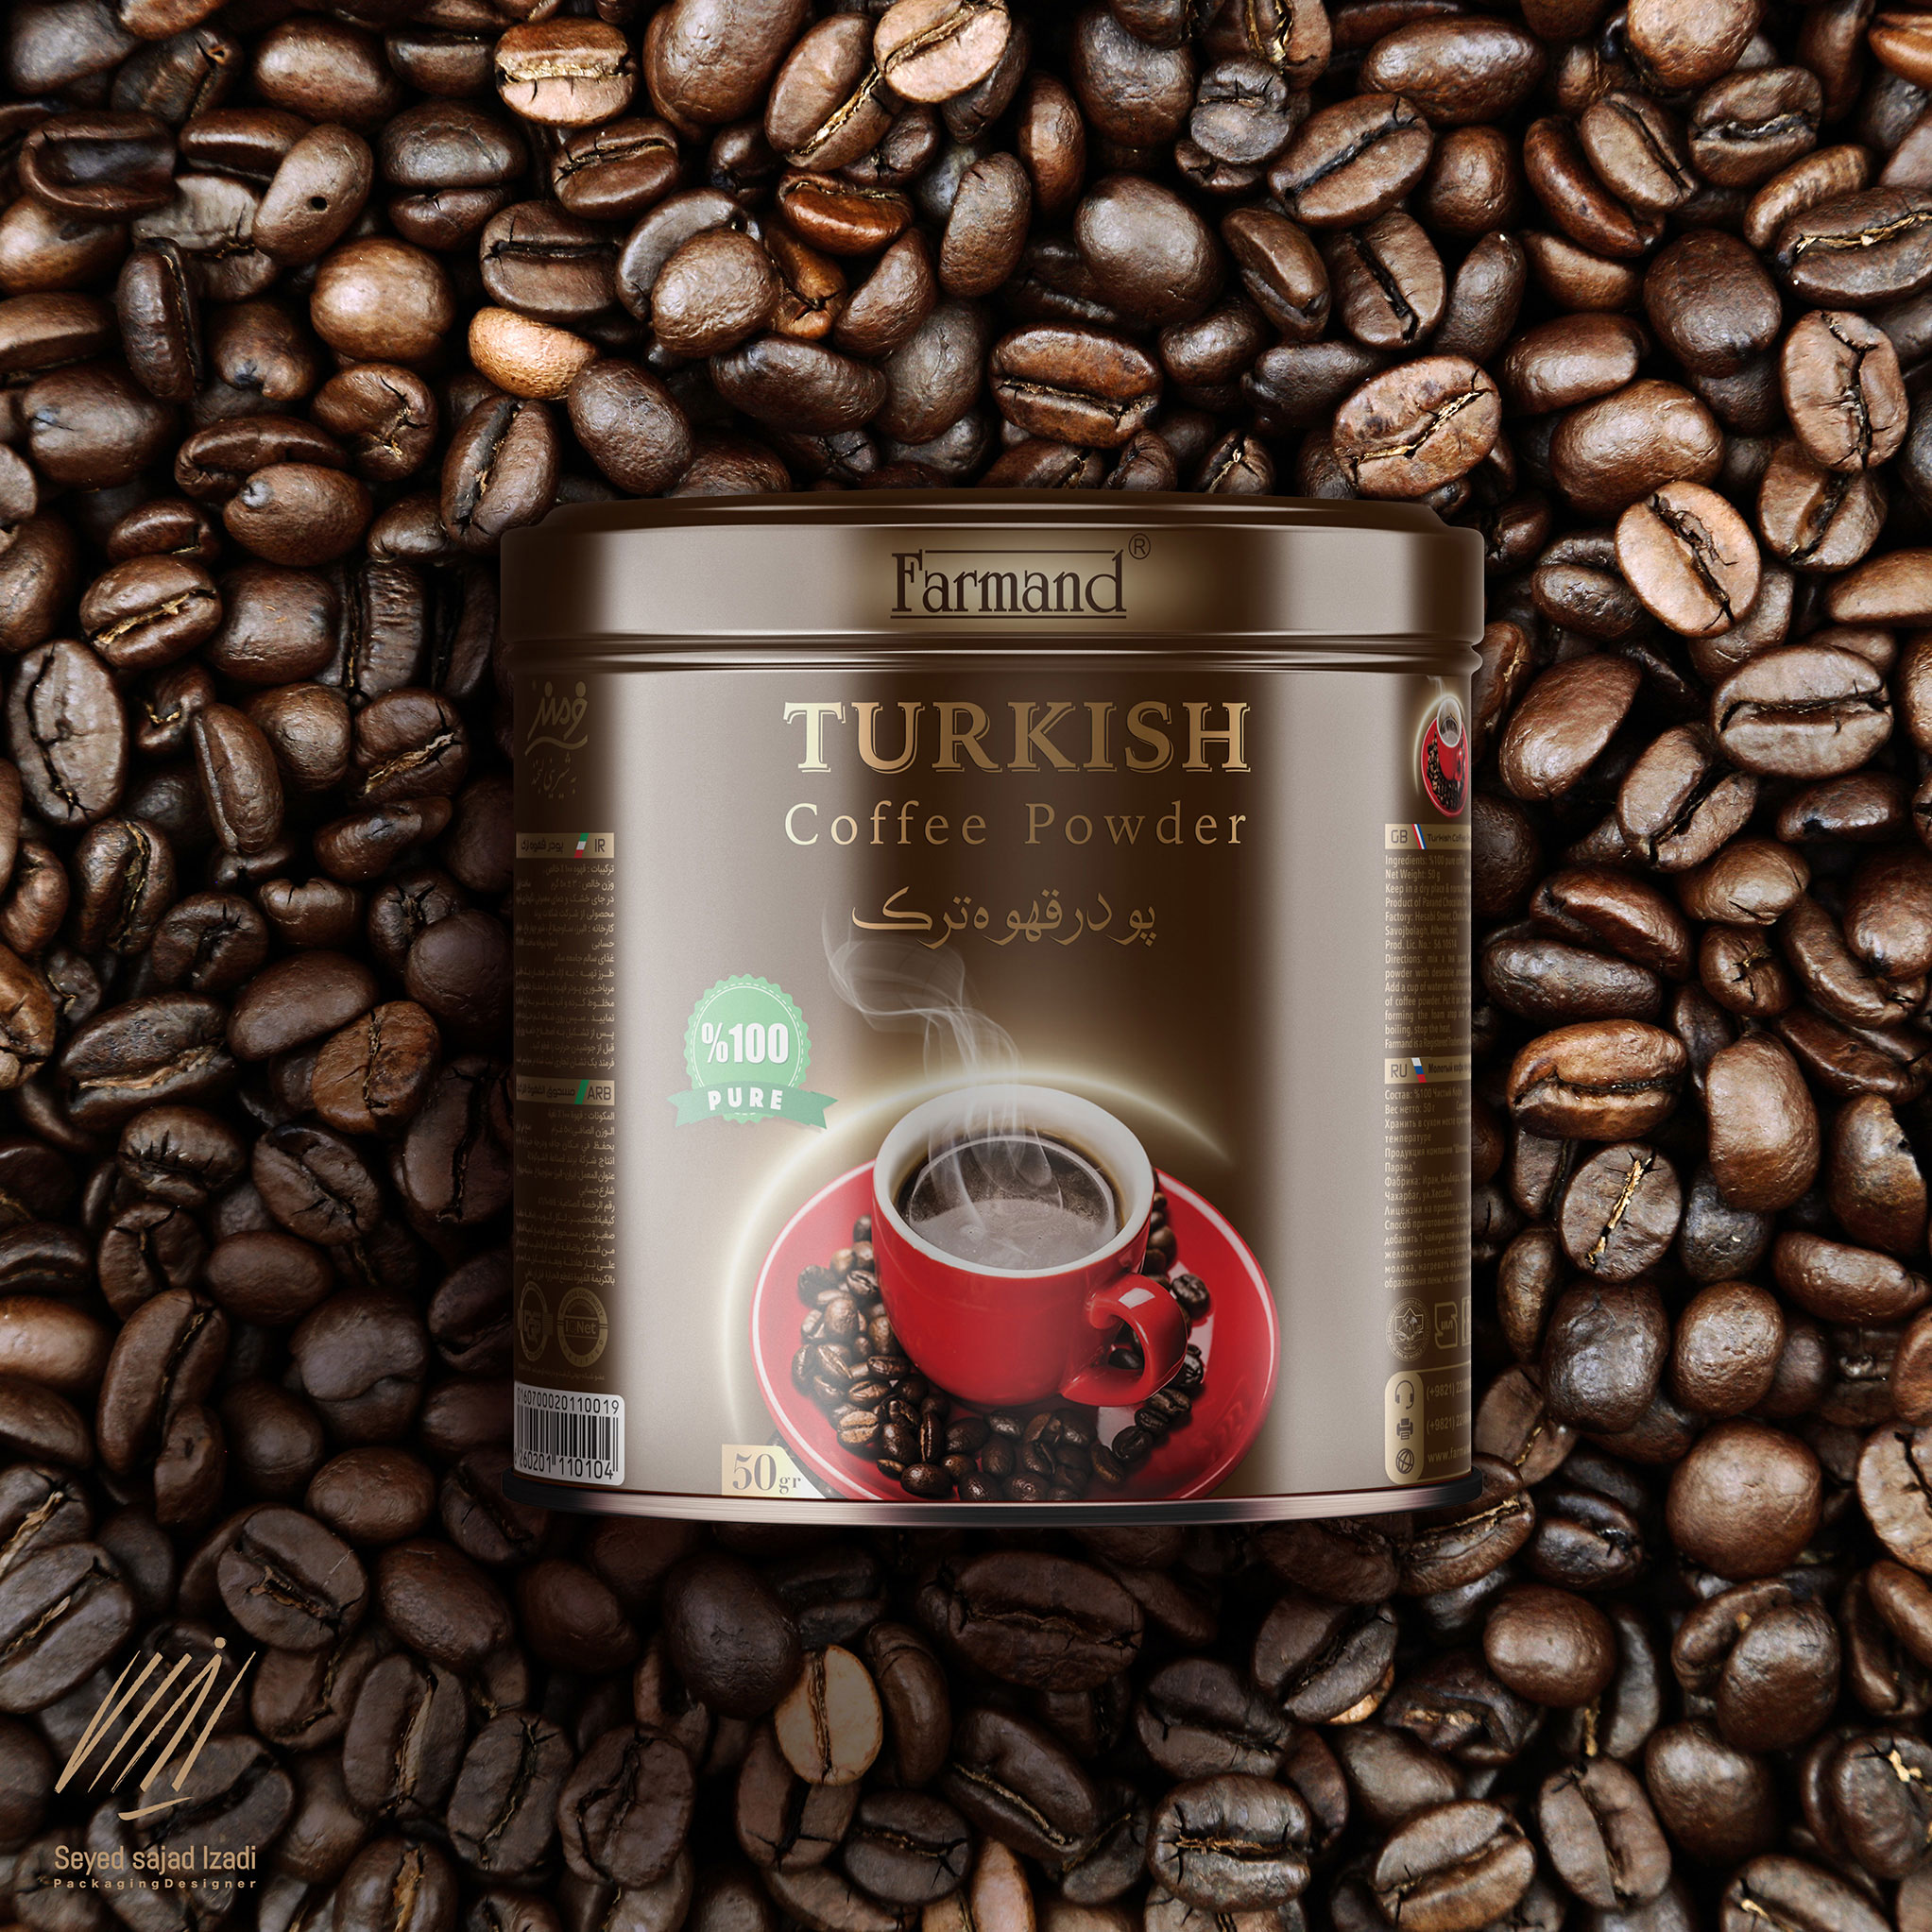 Farmand Coffee Powder Packaging Design